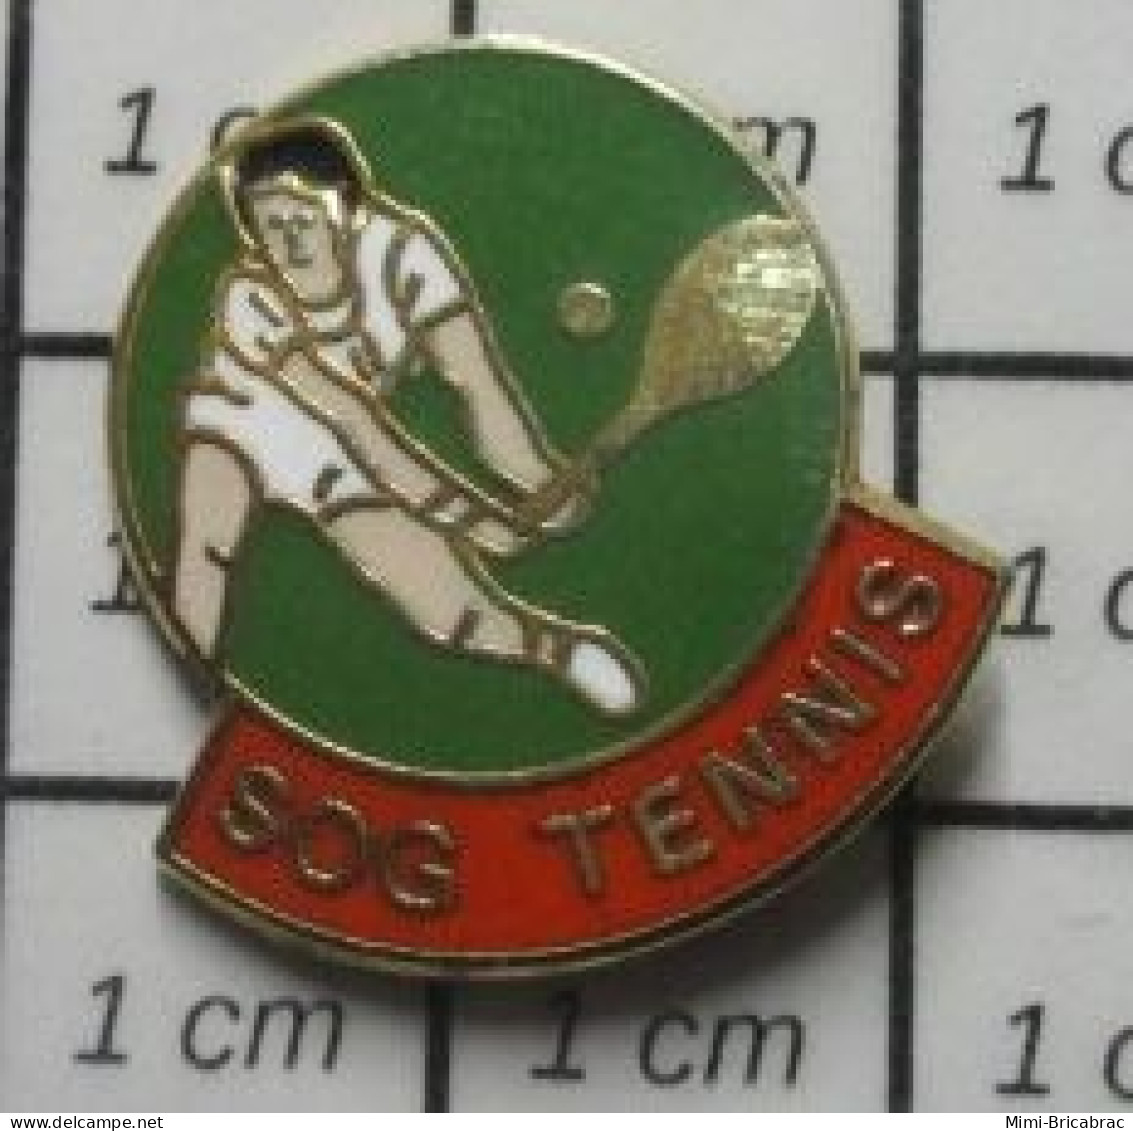 715B Pin's Pins / Beau Et Rare / SPORTS / CLUB SOG TENNIS - Tenis